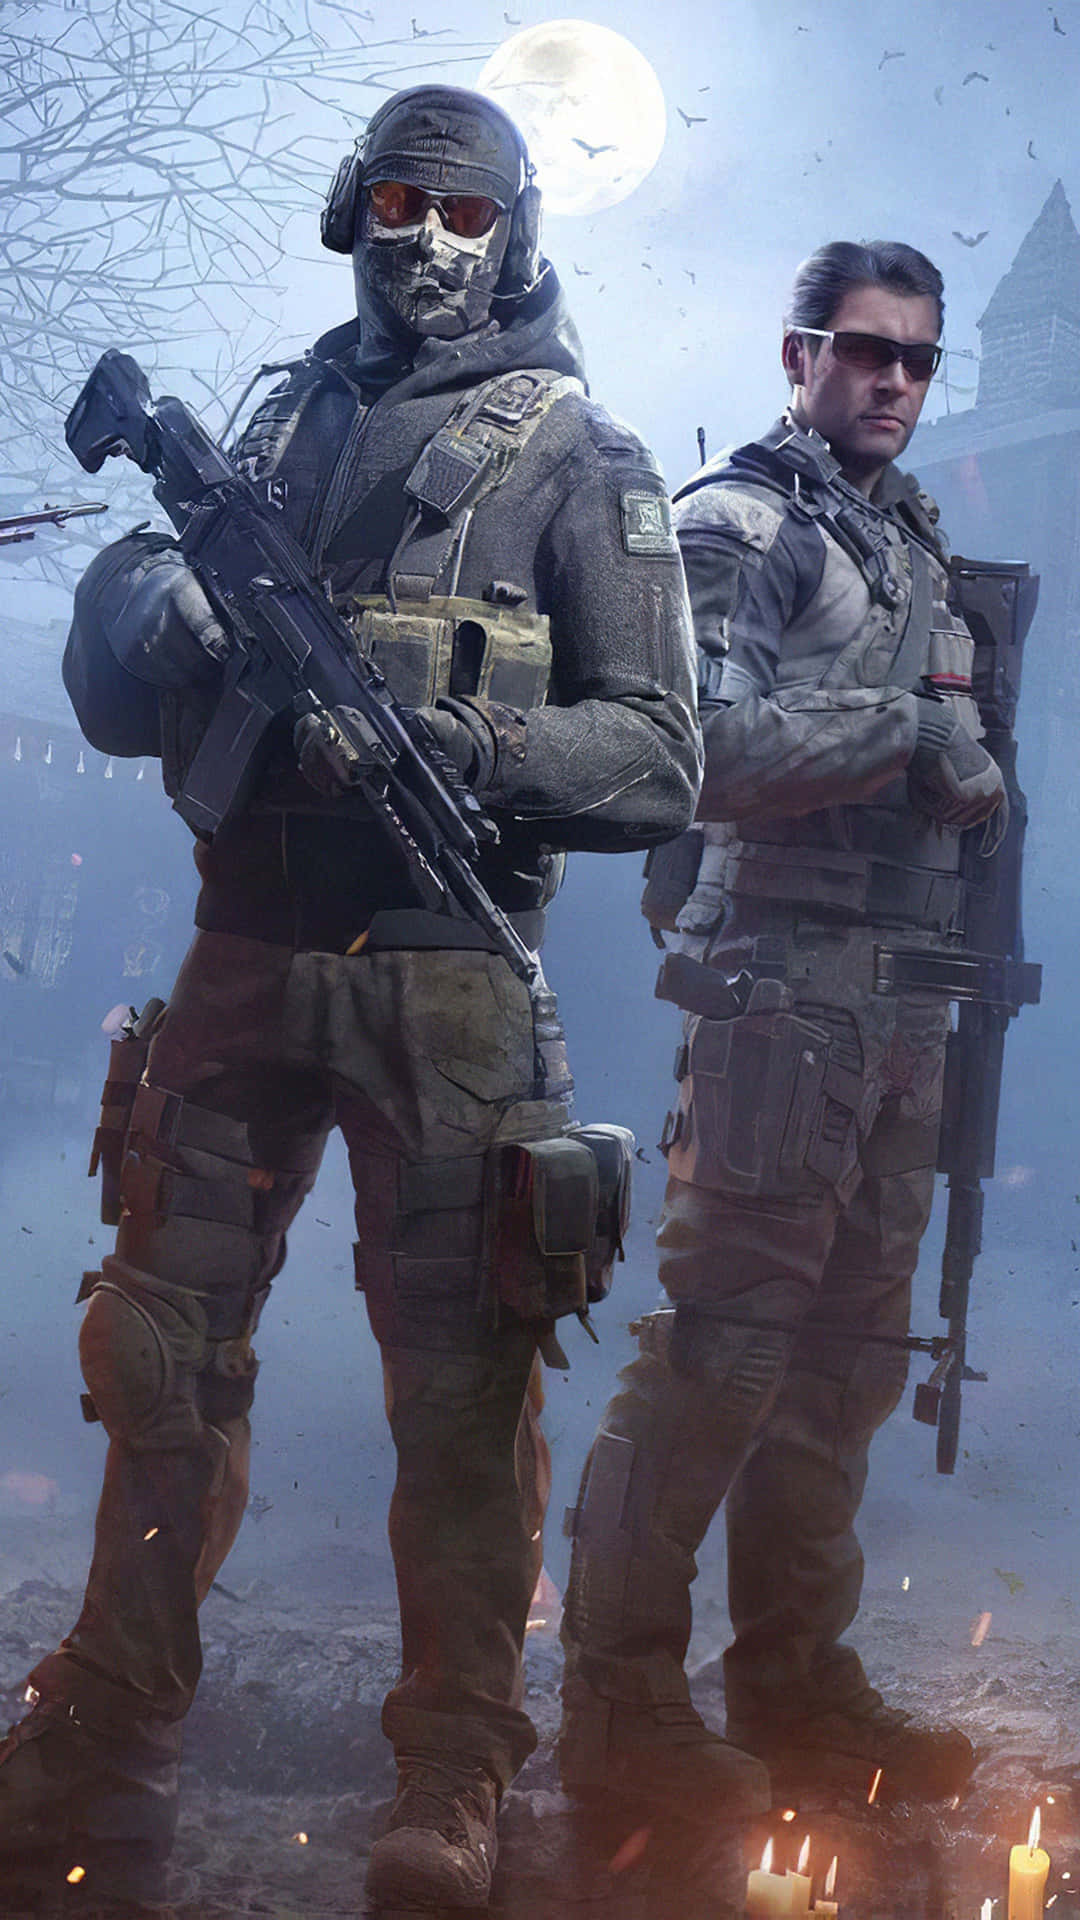 Mänligakaraktärer I Call Of Duty I Full Hd. Wallpaper